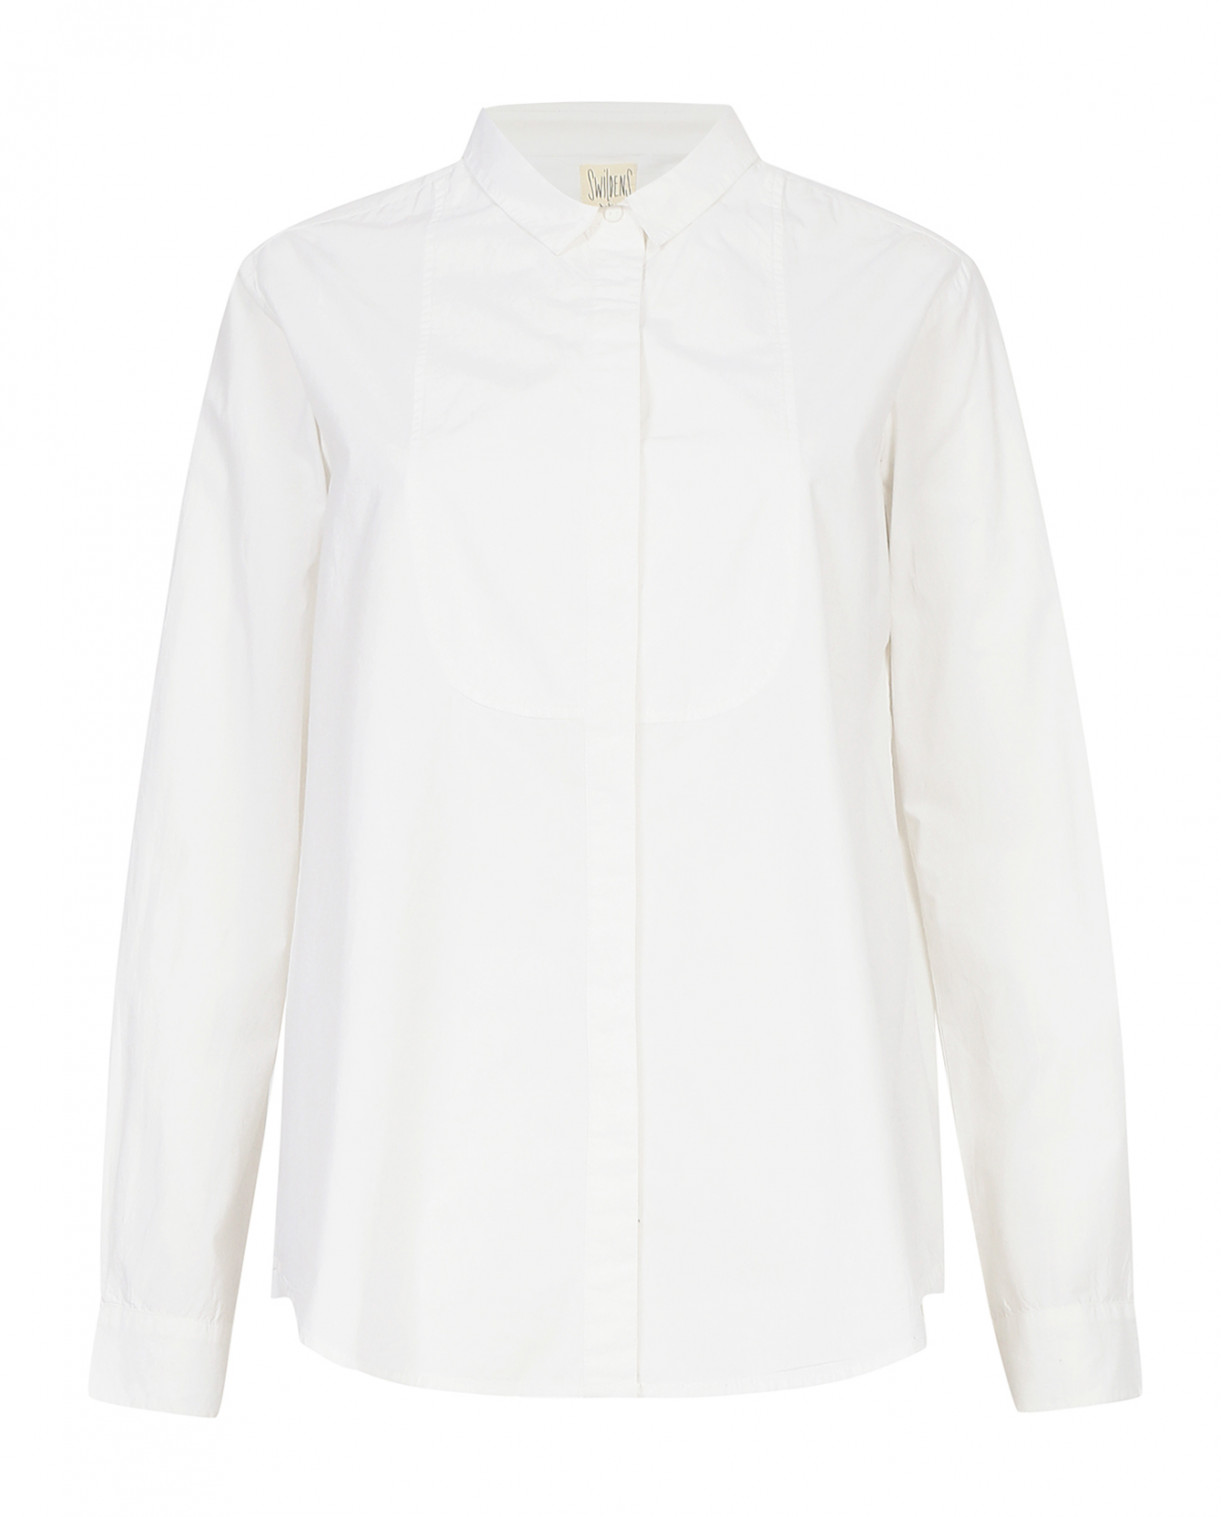 Рубашка свободного фасона из хлопка Swildens  –  Общий вид  – Цвет:  Белый